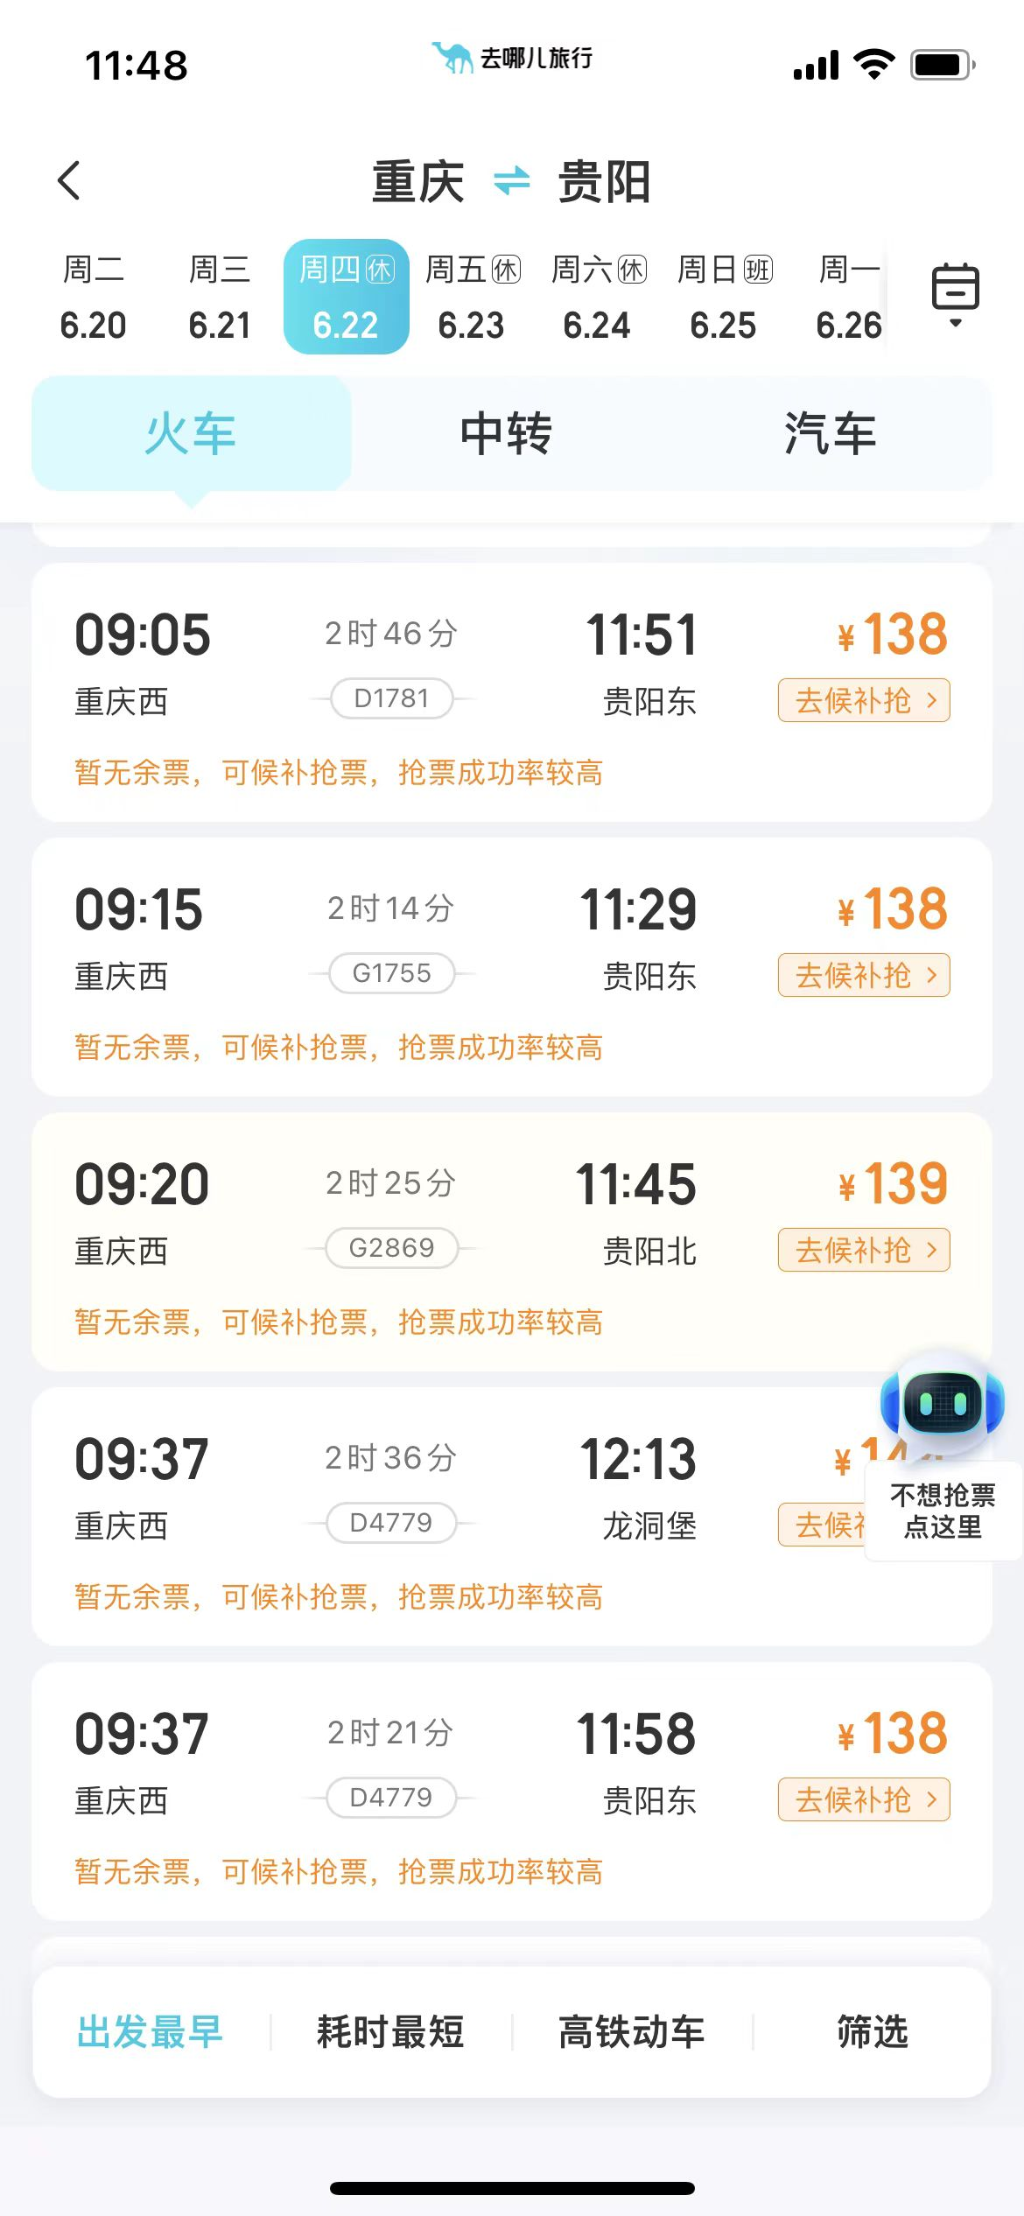 重庆-贵阳、重庆-西安等线路多趟车次已售罄。去哪儿供图